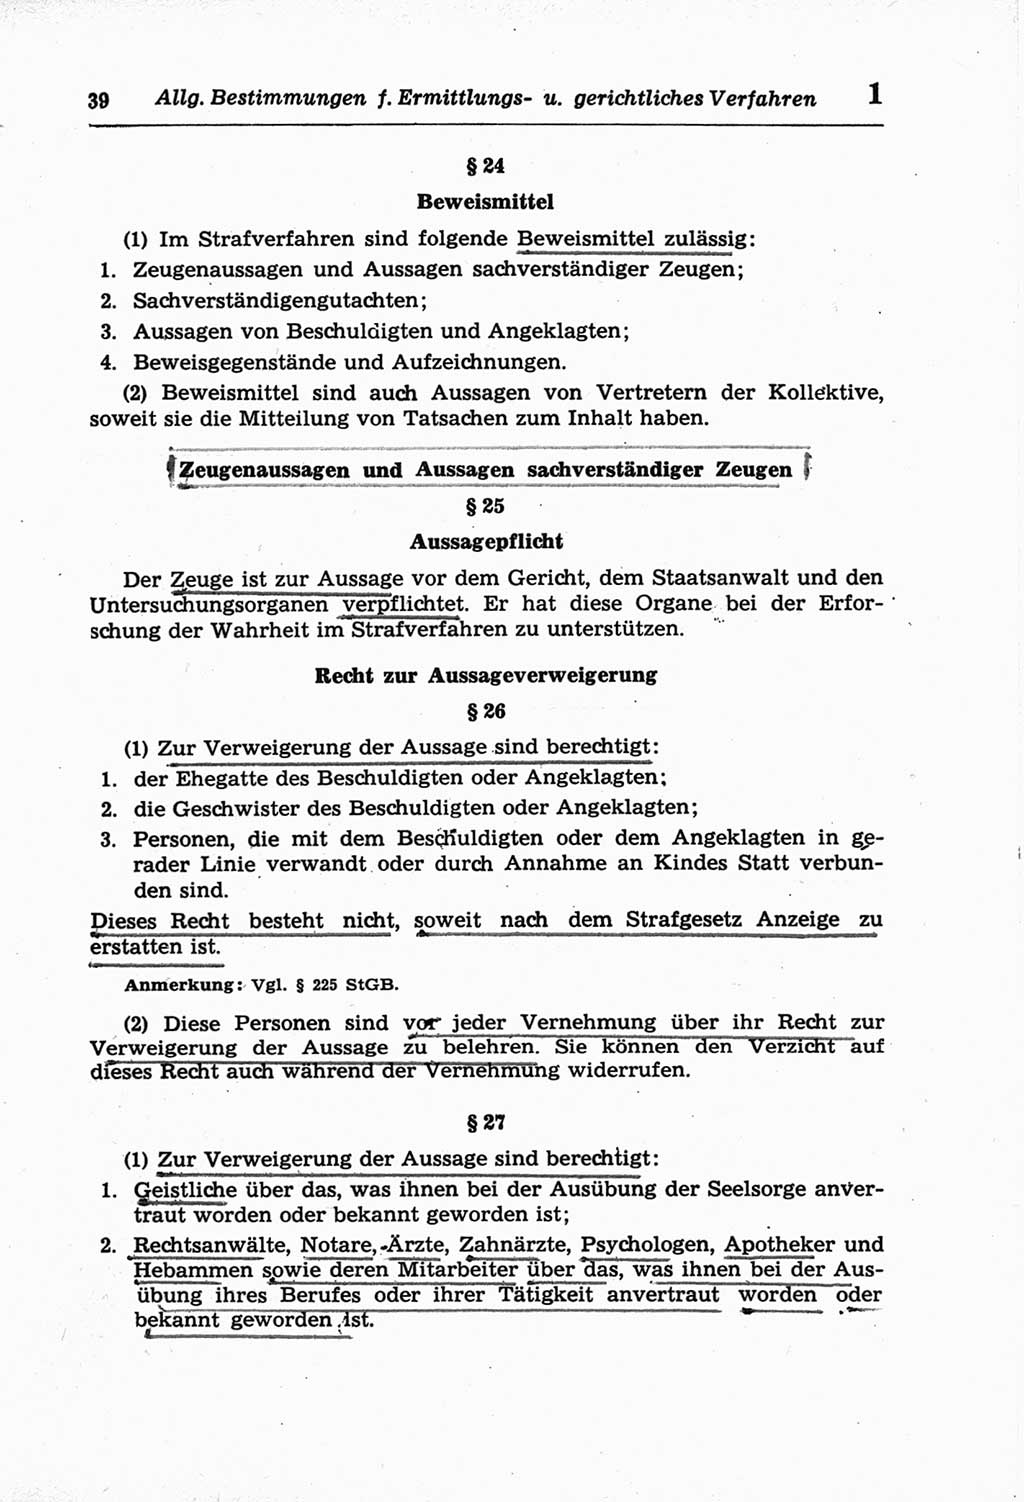 Strafprozeßordnung (StPO) der Deutschen Demokratischen Republik (DDR) und angrenzende Gesetze und Bestimmungen 1968, Seite 39 (StPO Ges. Bstgn. DDR 1968, S. 39)